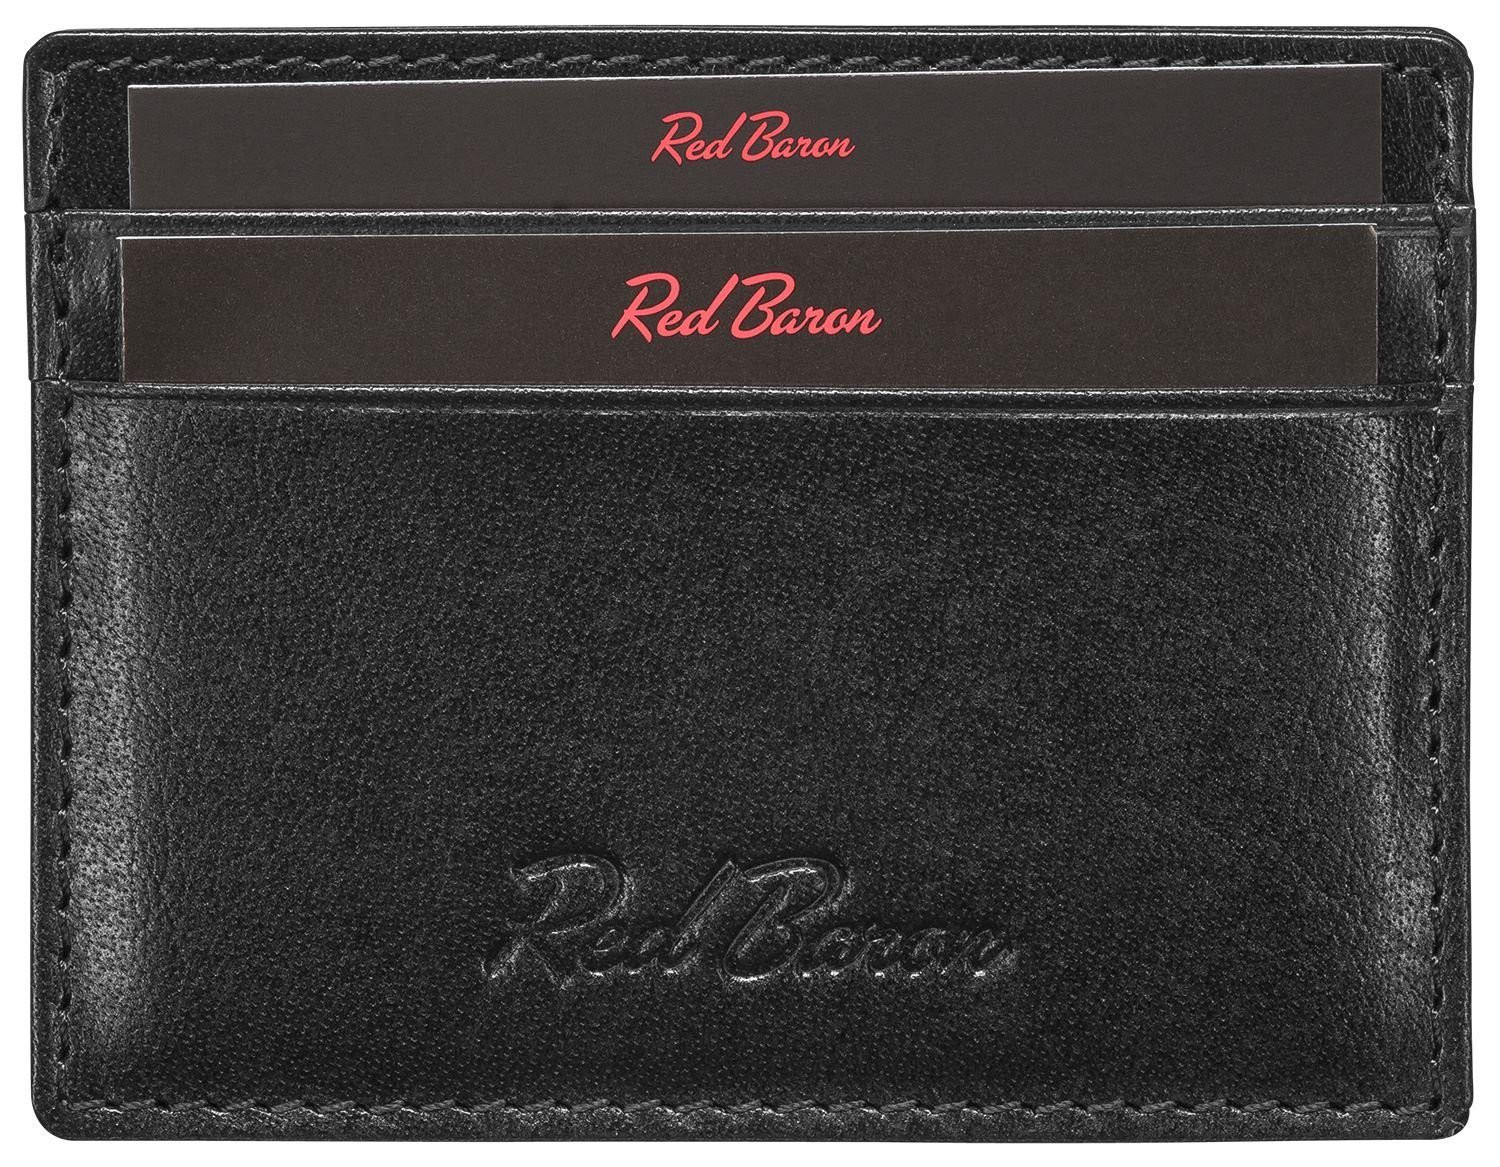 Red Baron Kartenetui RB-CC-001-03, 4 Kreditkartenfächer, Leder, schlicht, einfach